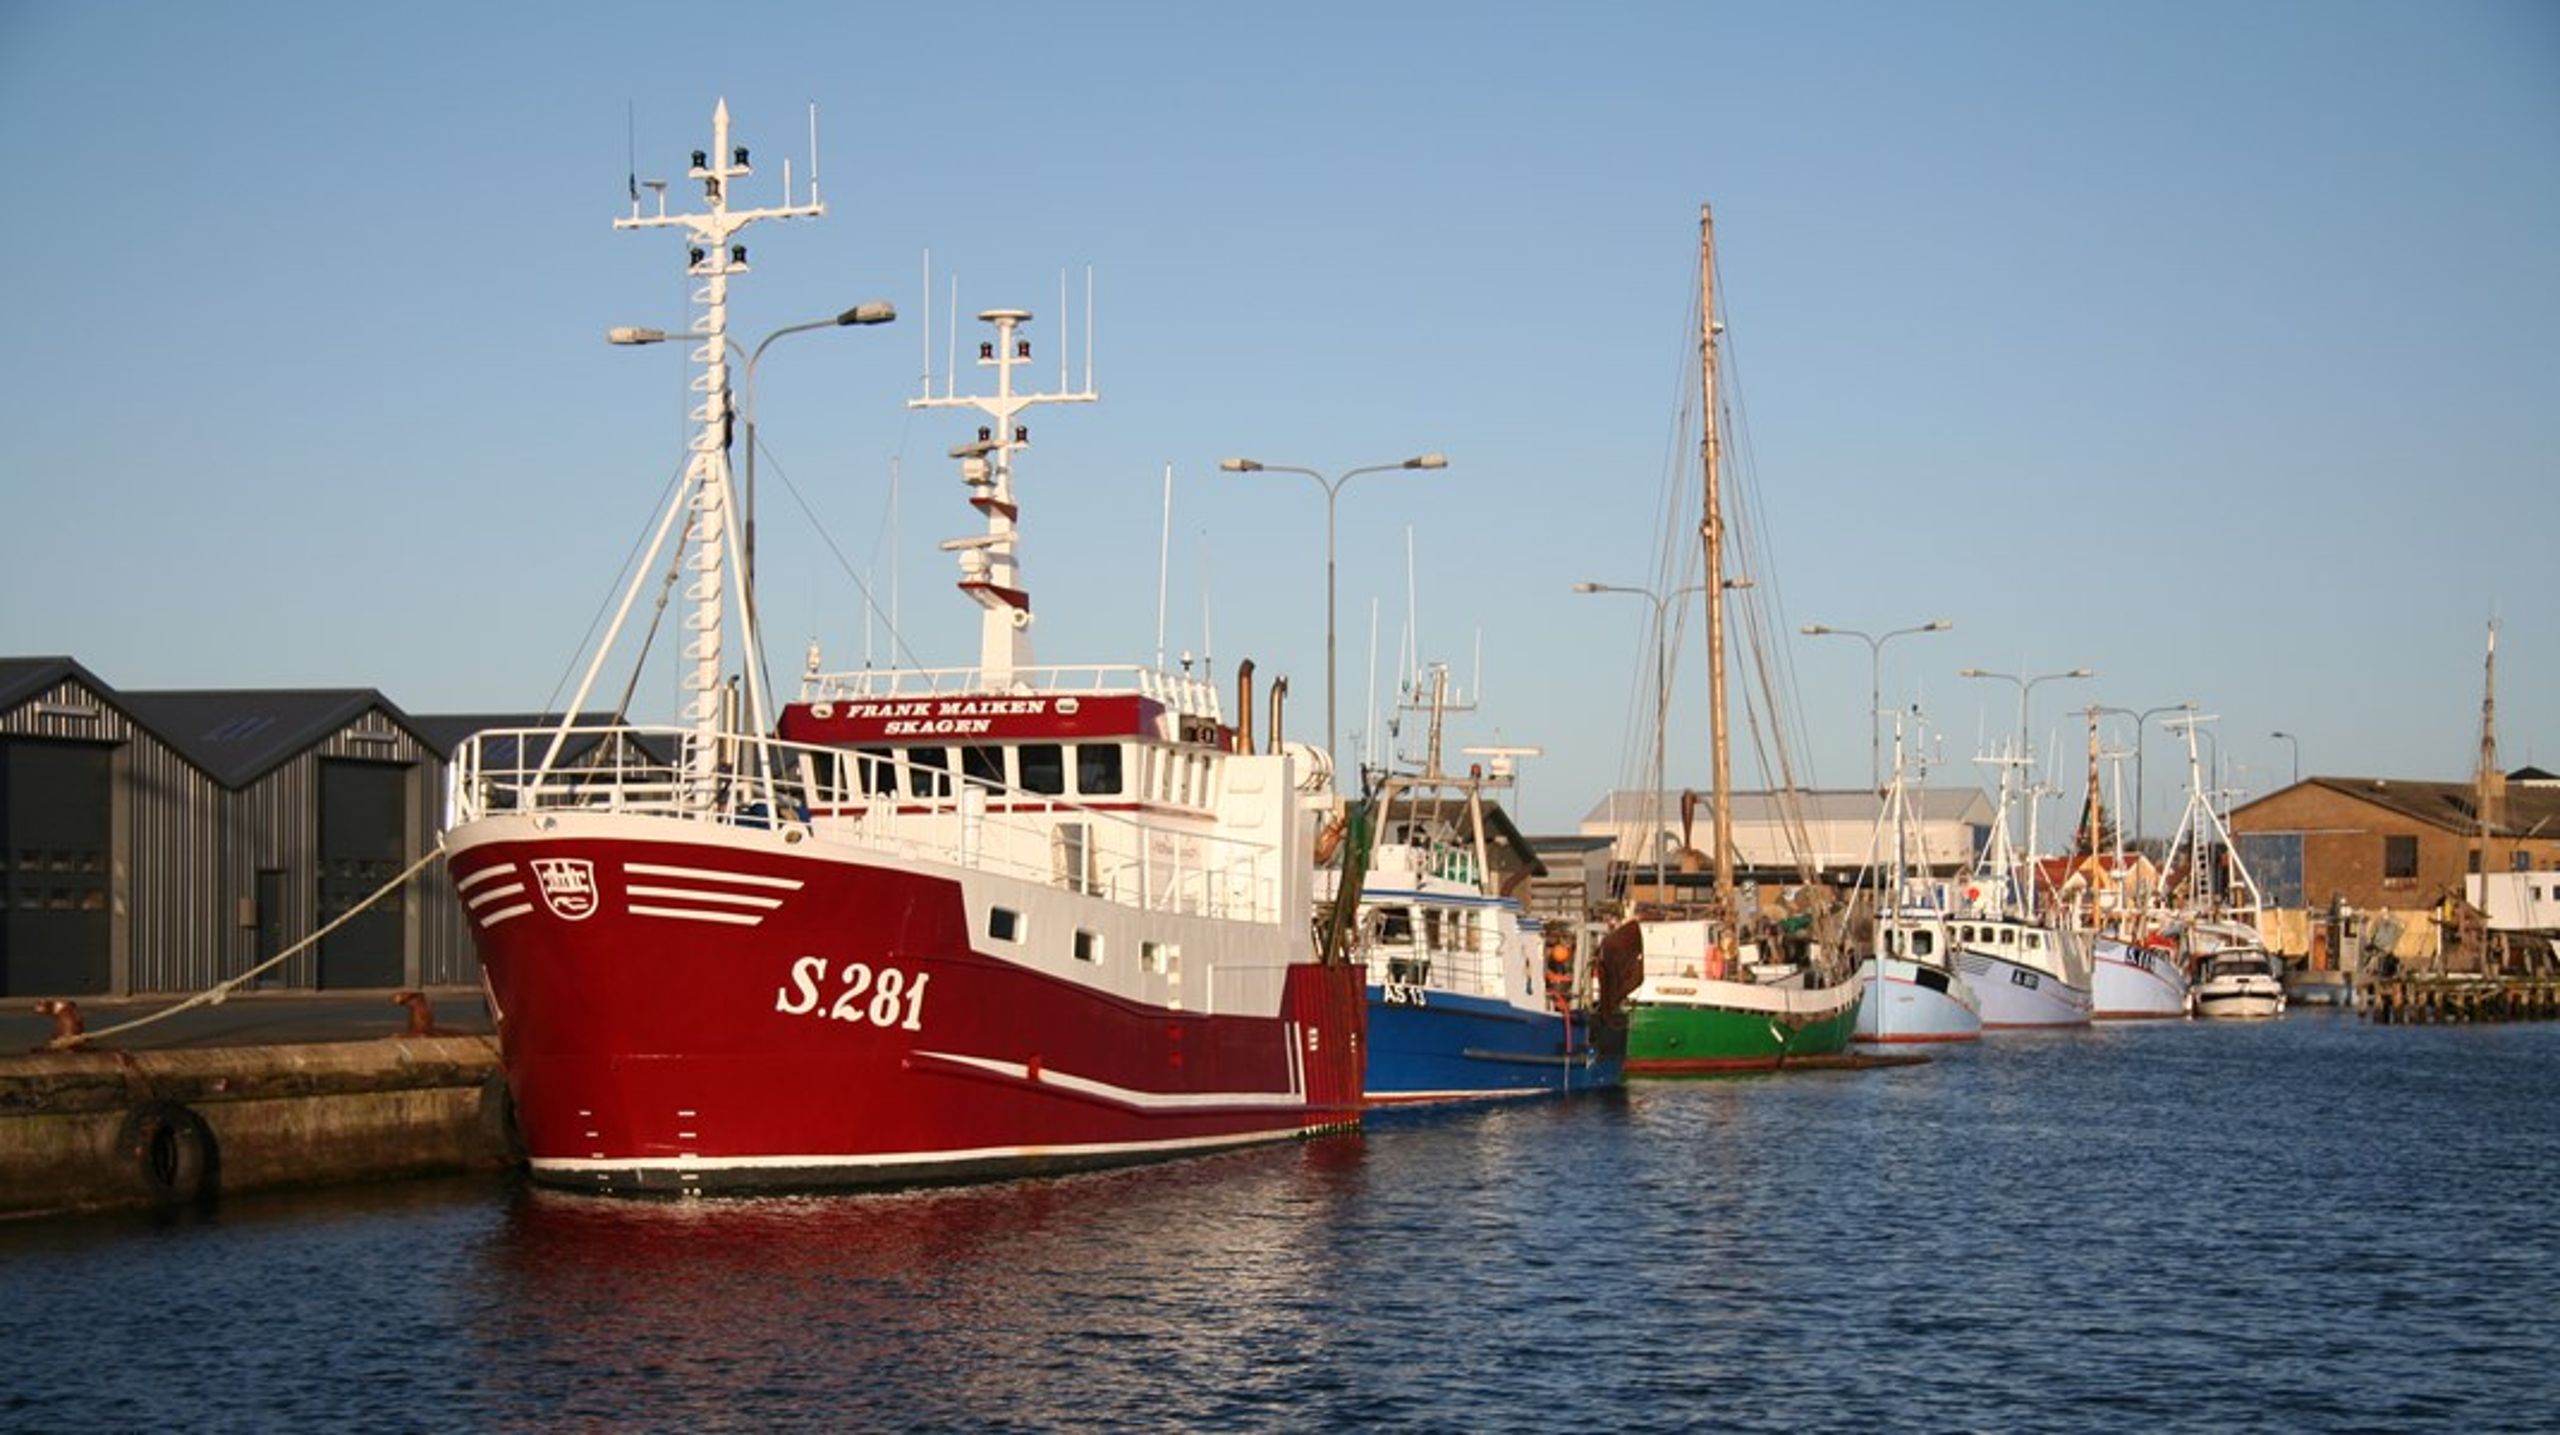 Ny beregning vurderer, at fiskeindustrien og engroshandlen i værste fald kan komme til at koste mellem 148 og 271 fuldtidsansatte deres job som følge af reduktioner i danske fiskeres fangster efter Brexit.&nbsp;